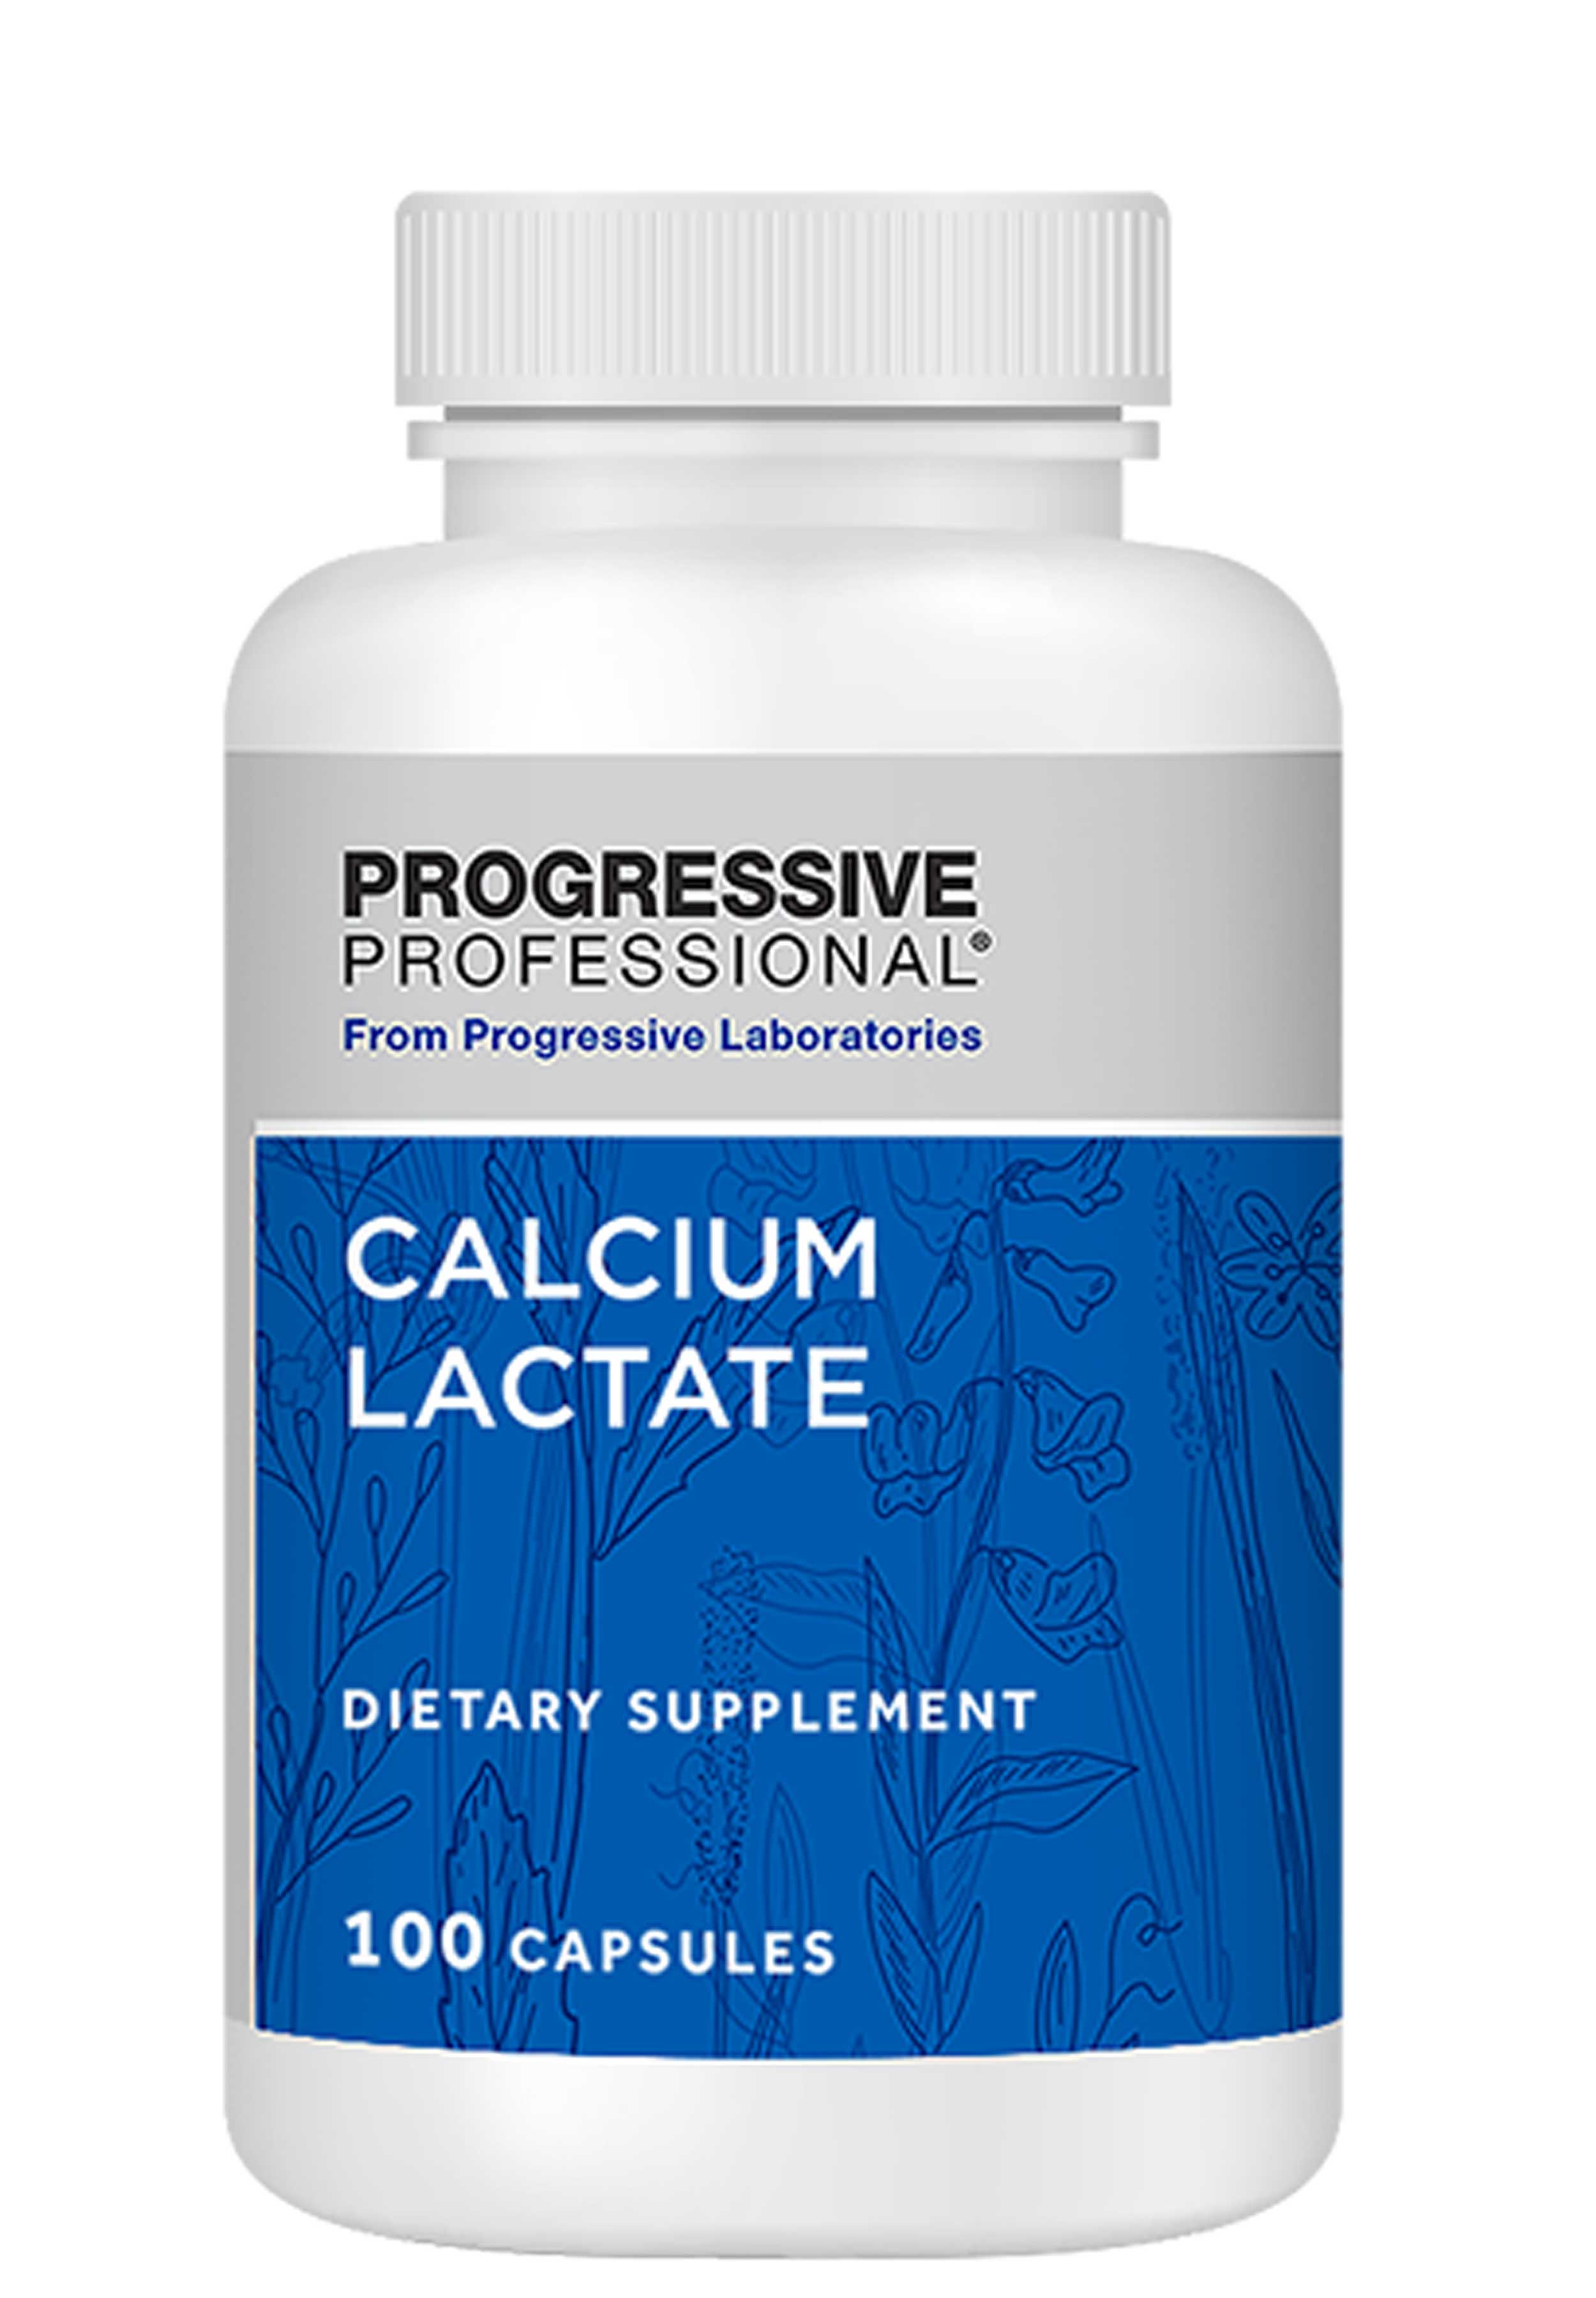 Progressive Laboratories Calcium Lactate